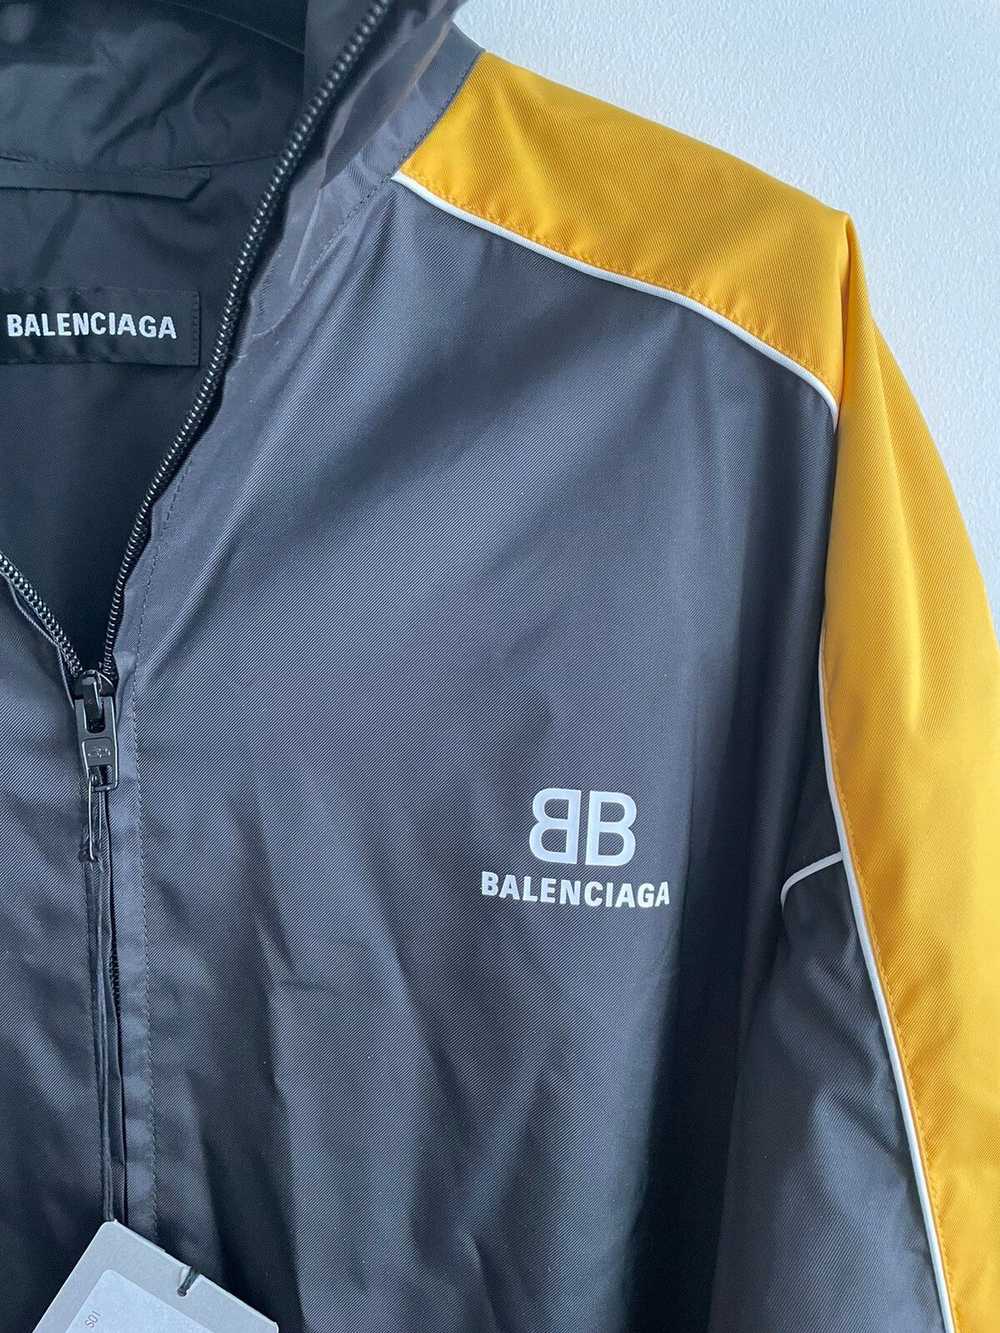 Balenciaga Limited Edition Runway $2k Brand NEW B… - image 2